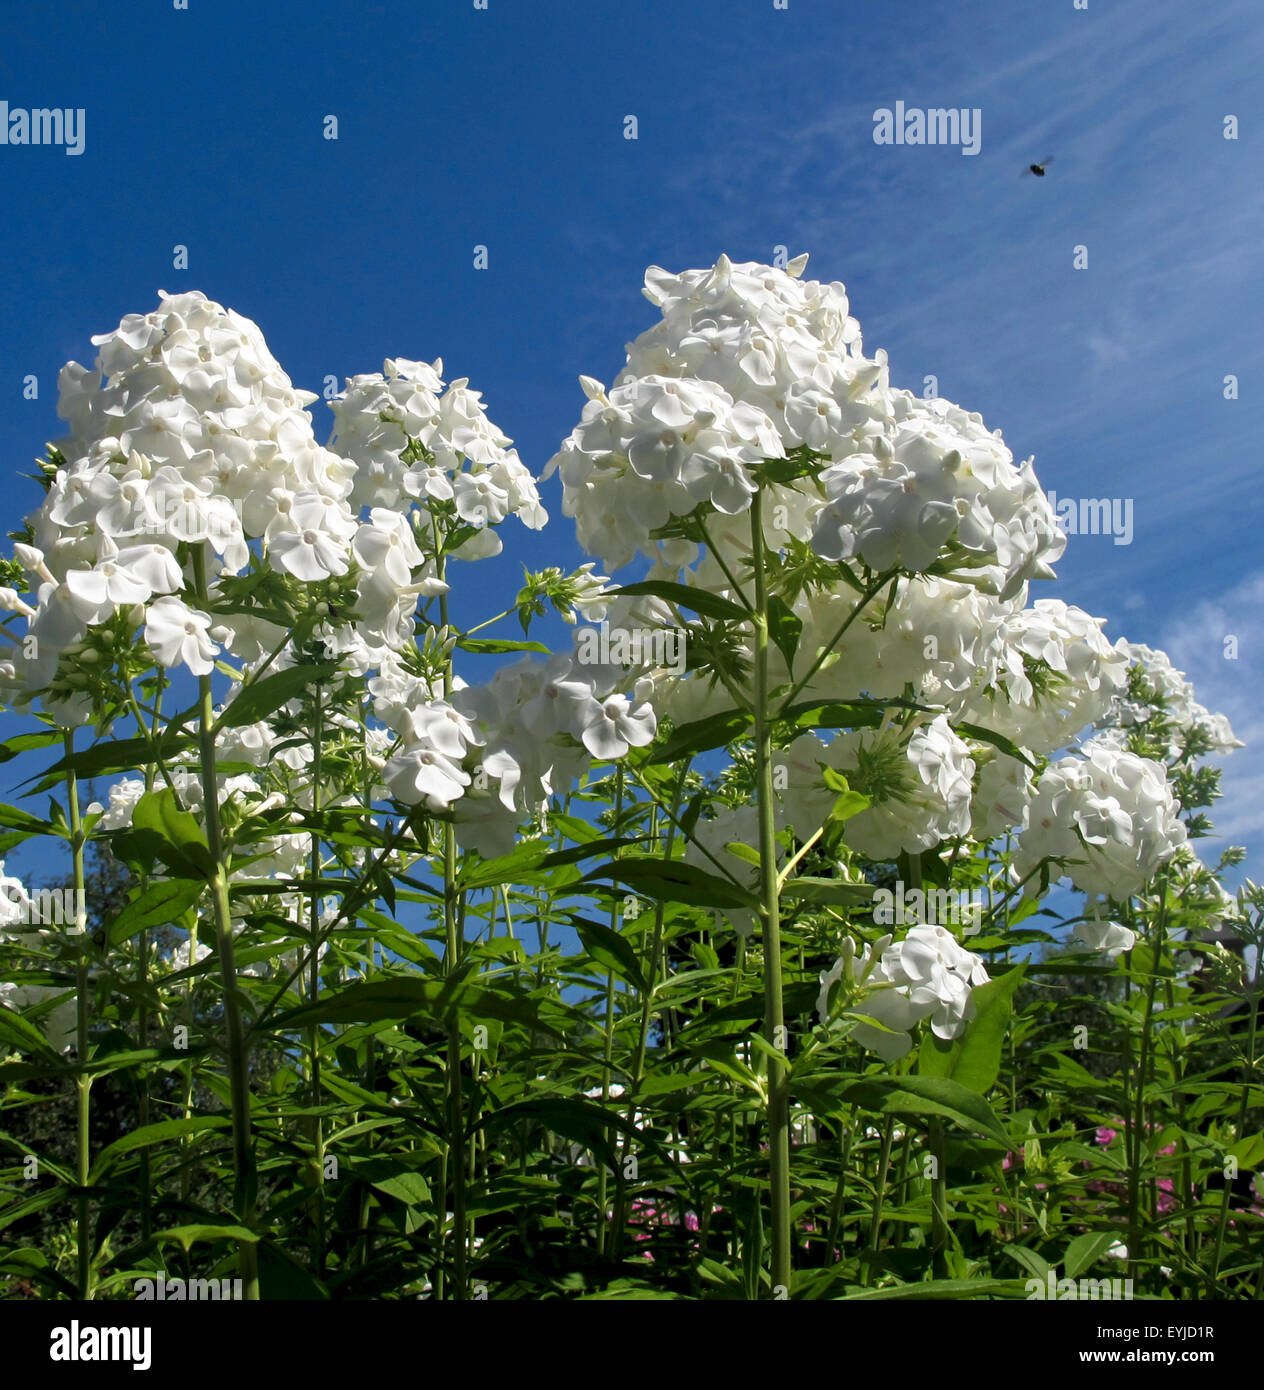 Tall garden phlox white flowers against blue sky. Stock Photo